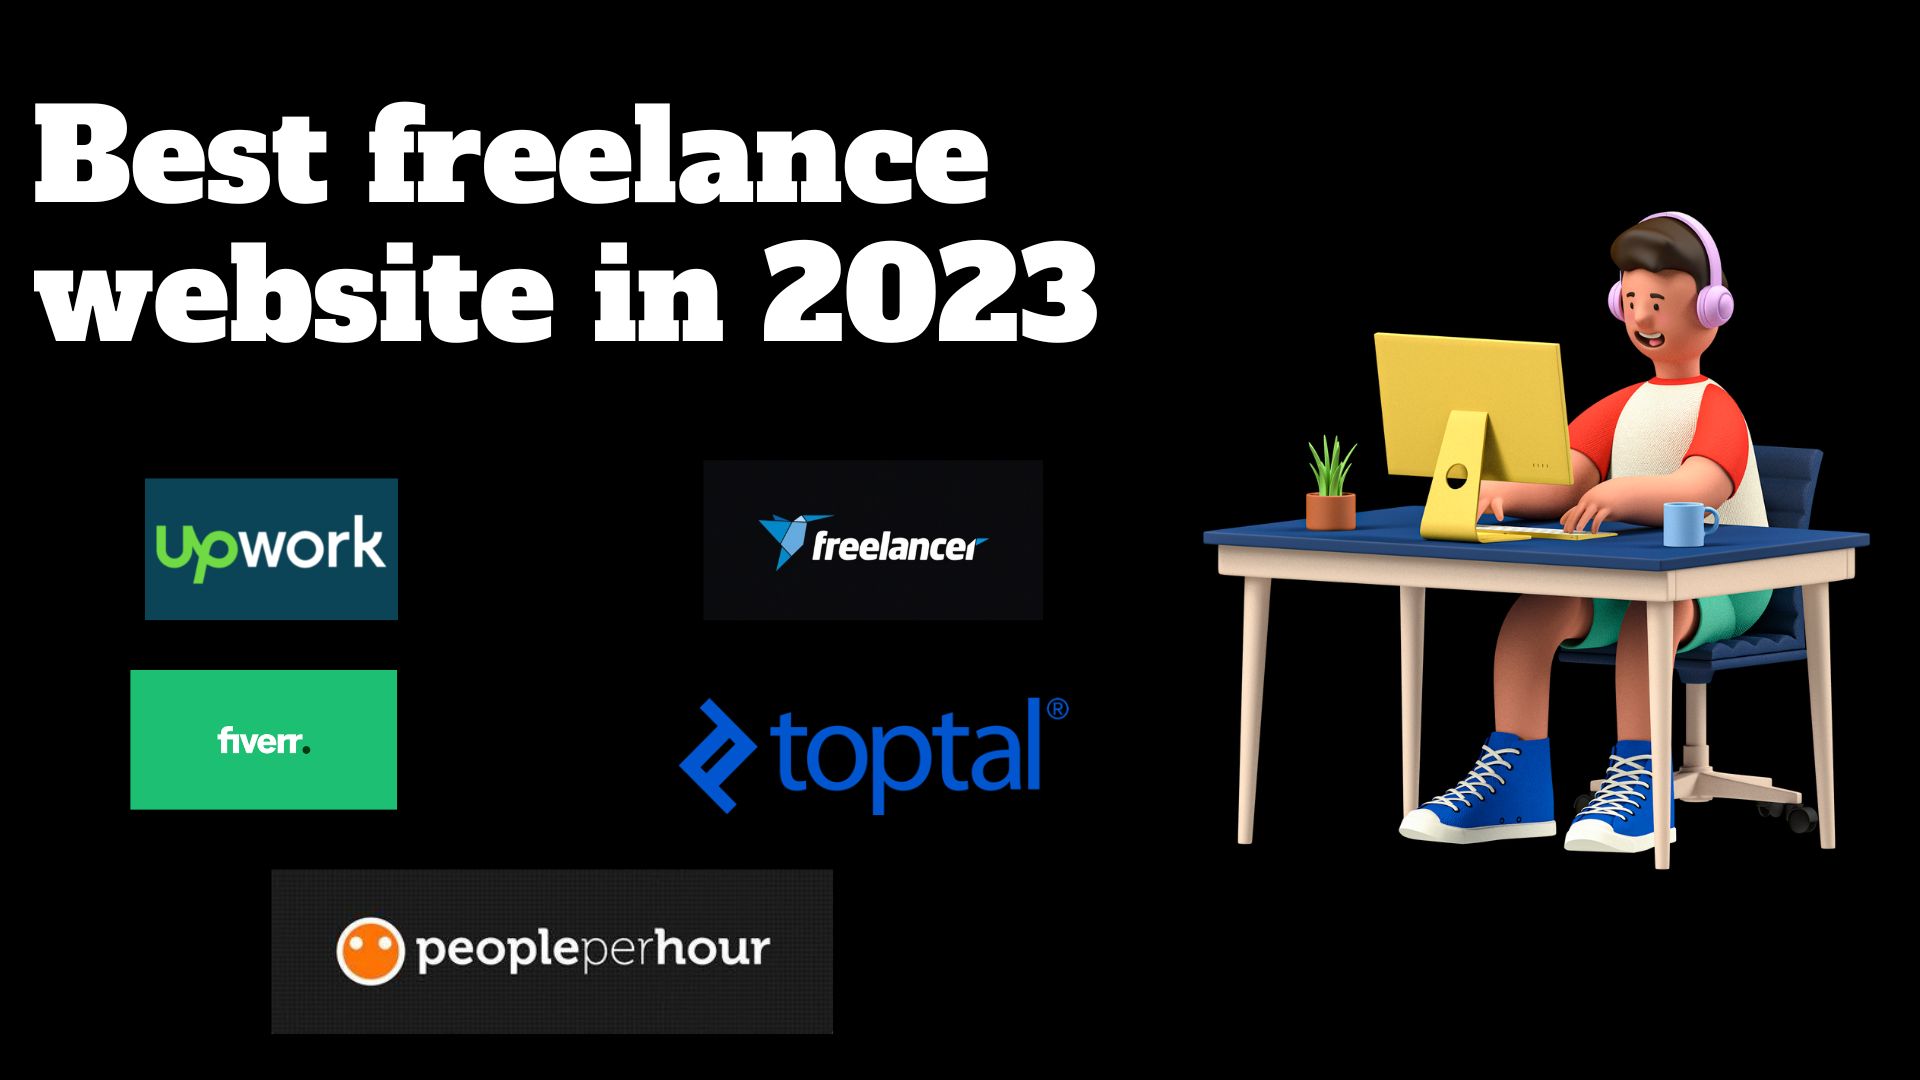 Best freelance website in 2023